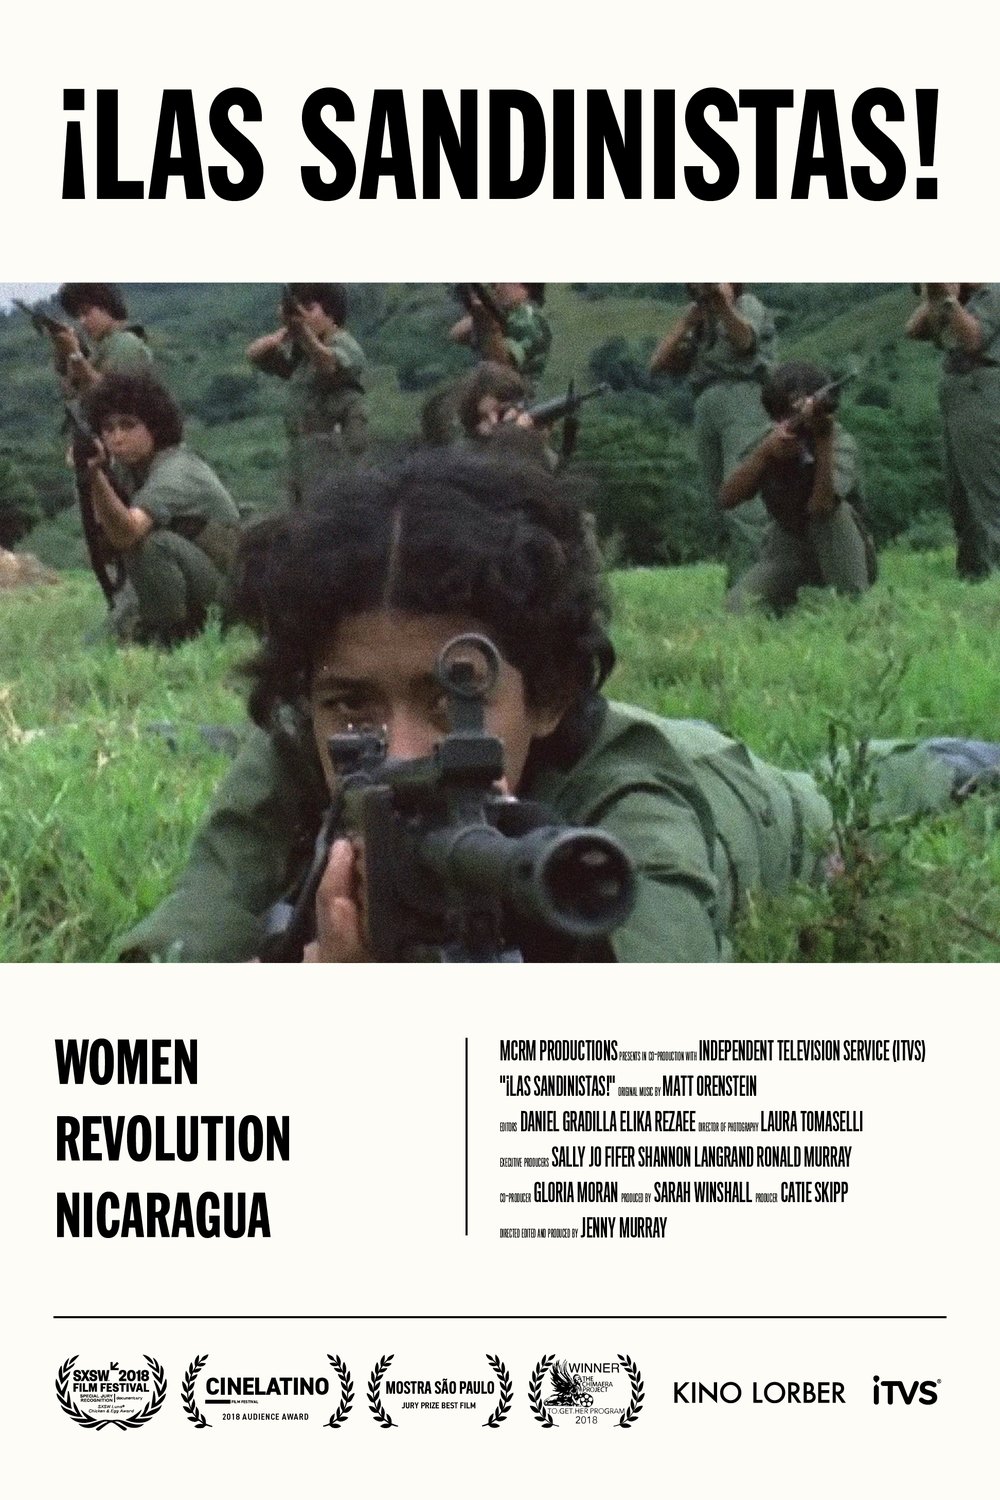 L'affiche originale du film Las Sandinistas! en espagnol